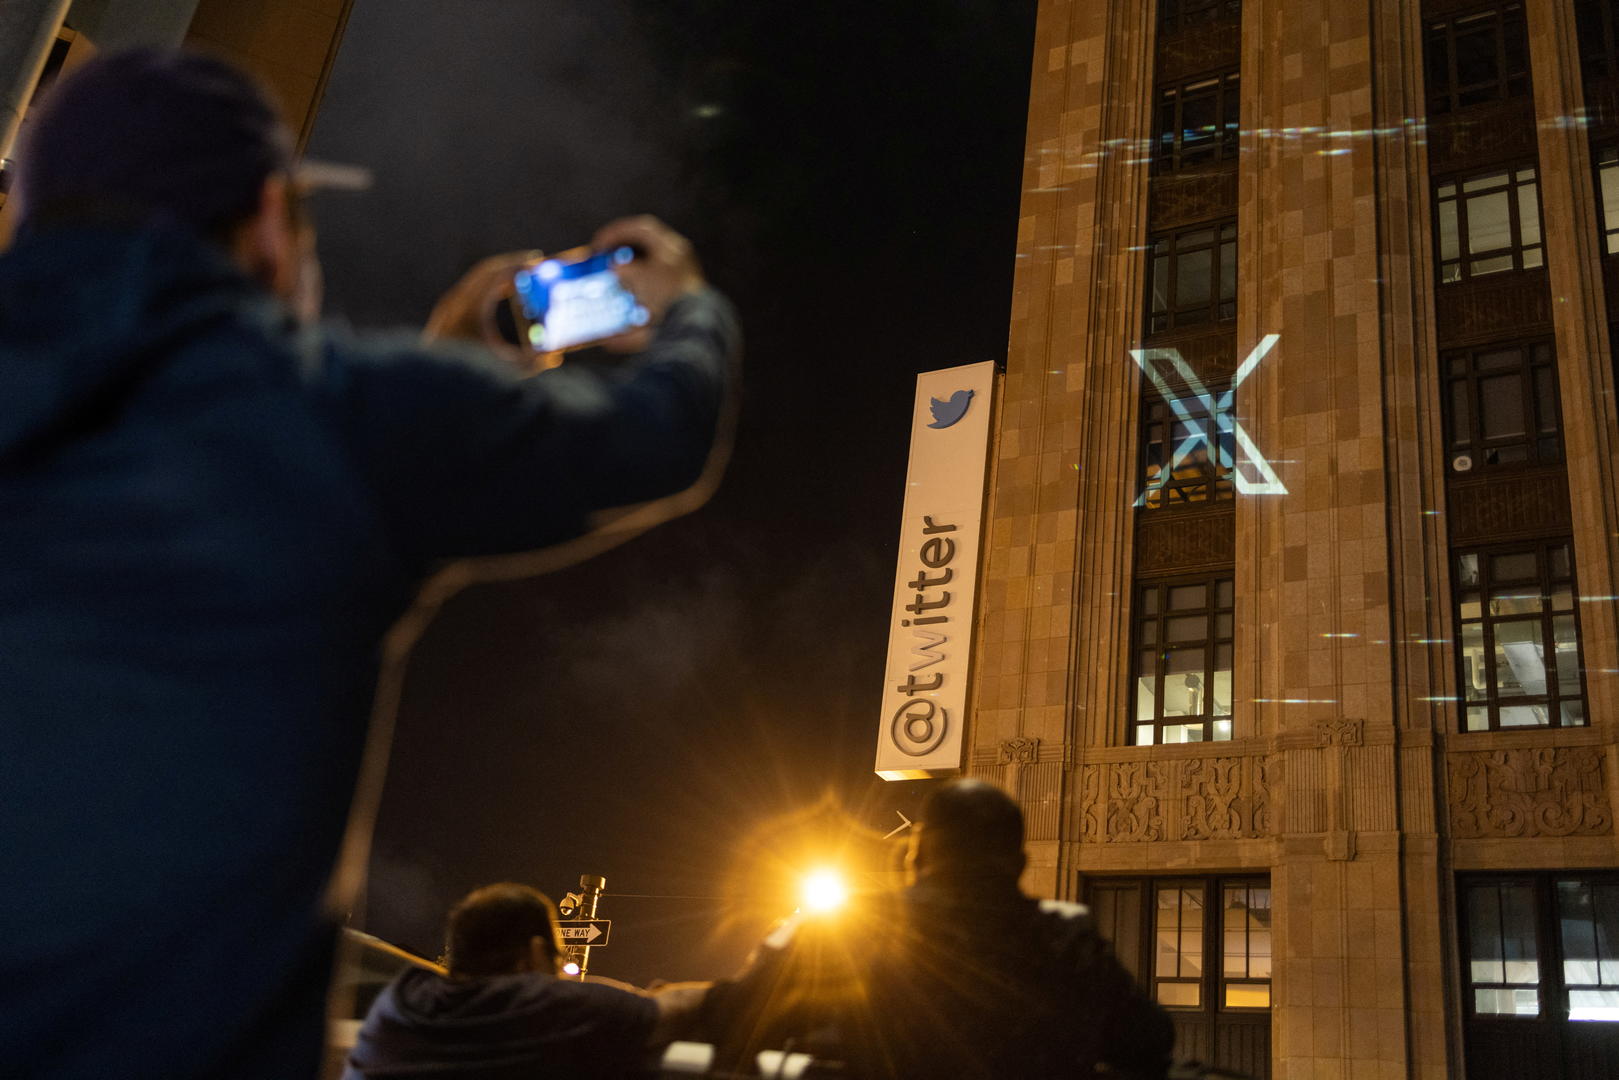 ▲推特新图标“X”被投射到其总部大楼上 据ICphoto